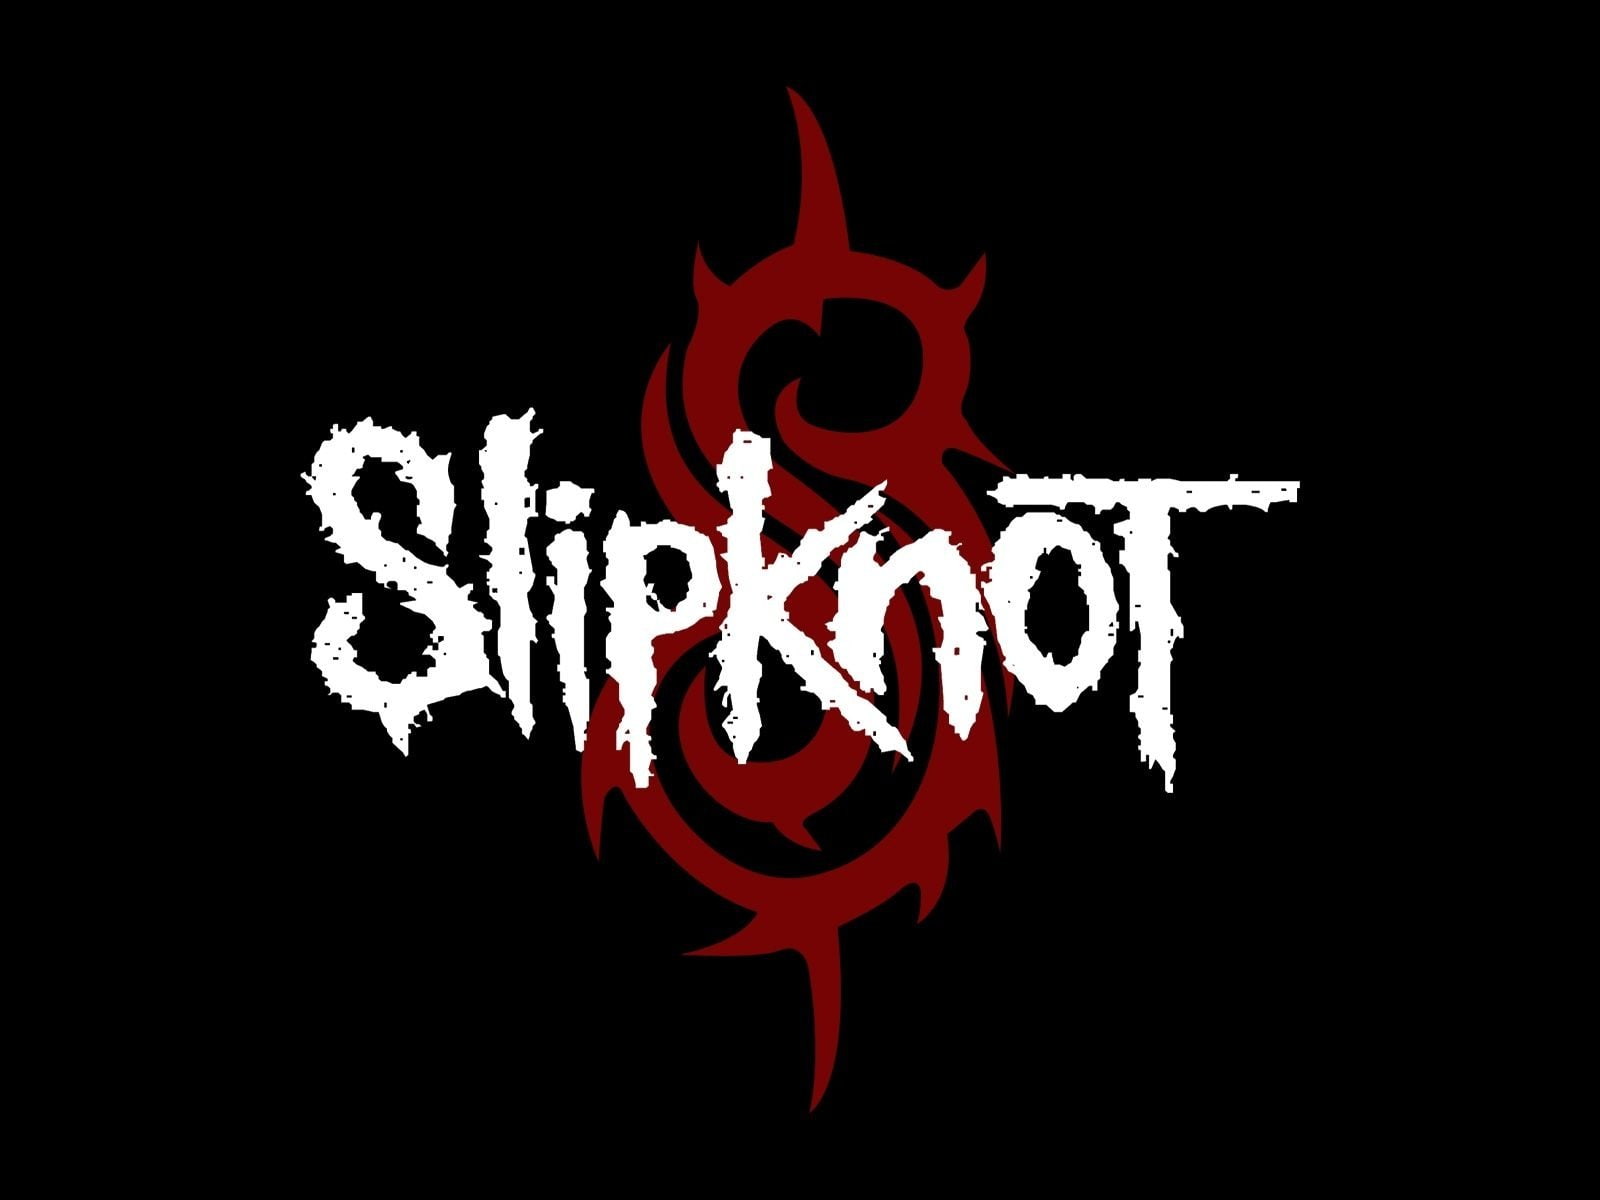 Band (Music), Slipknot, Heavy Metal, Industrial Metal, Nu Metal